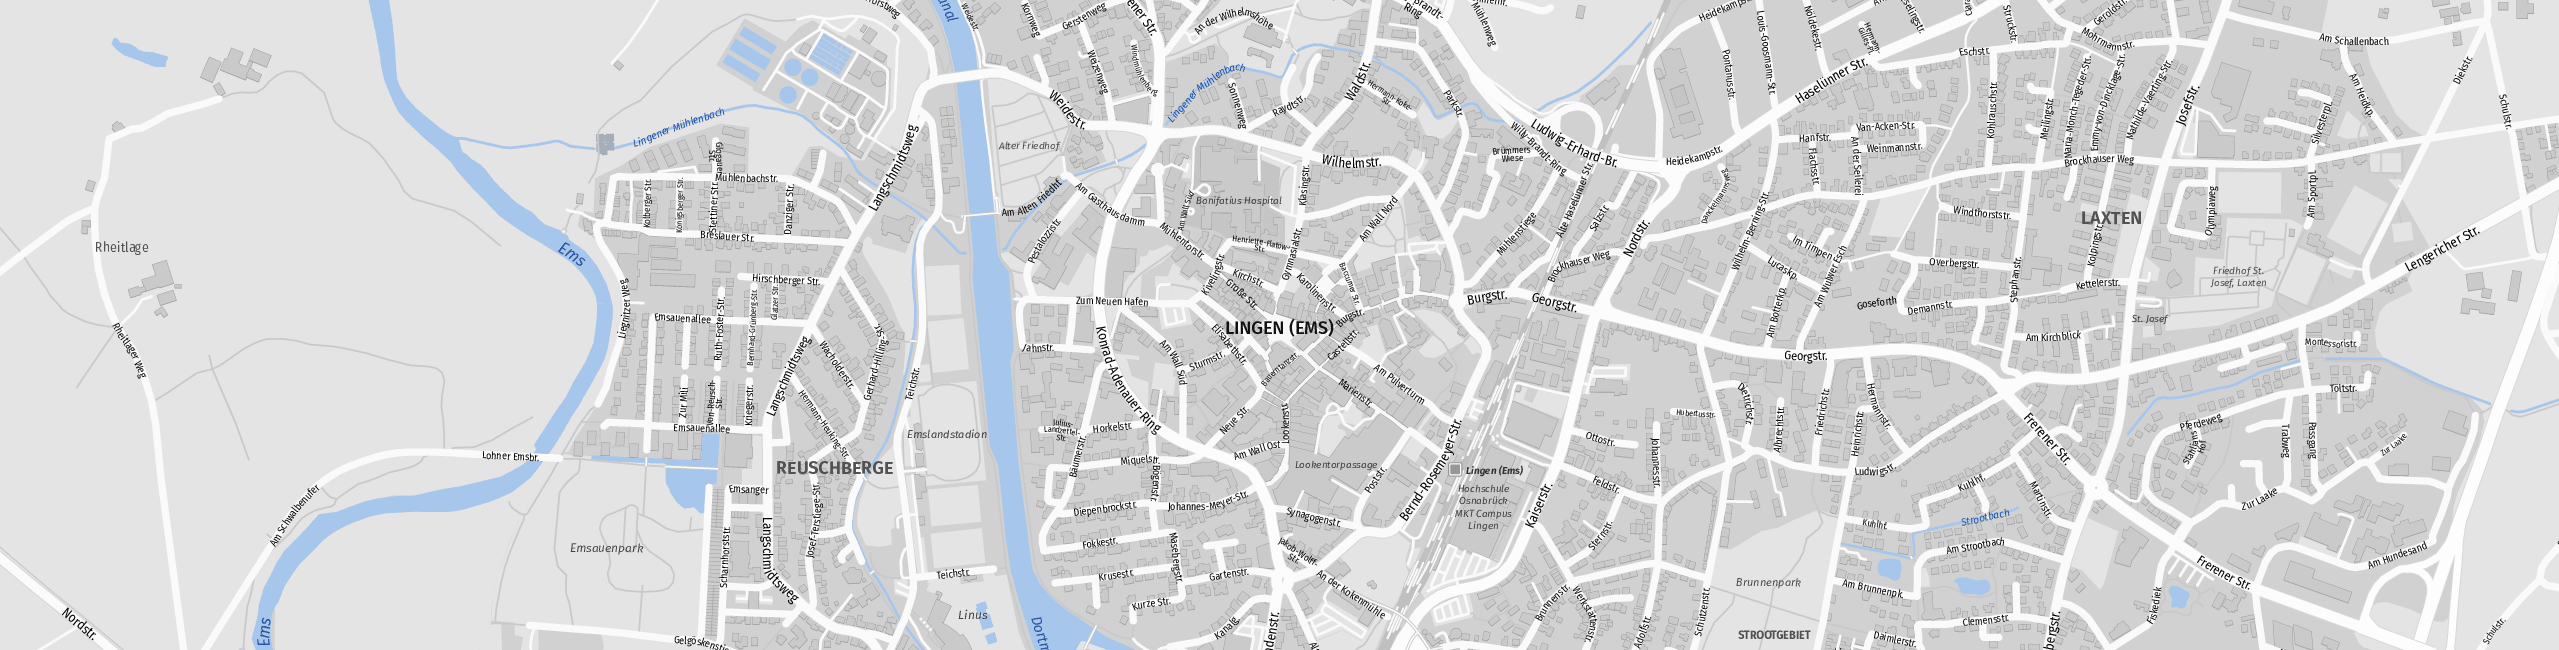 Stadtplan Lingen (Ems) zum Downloaden.